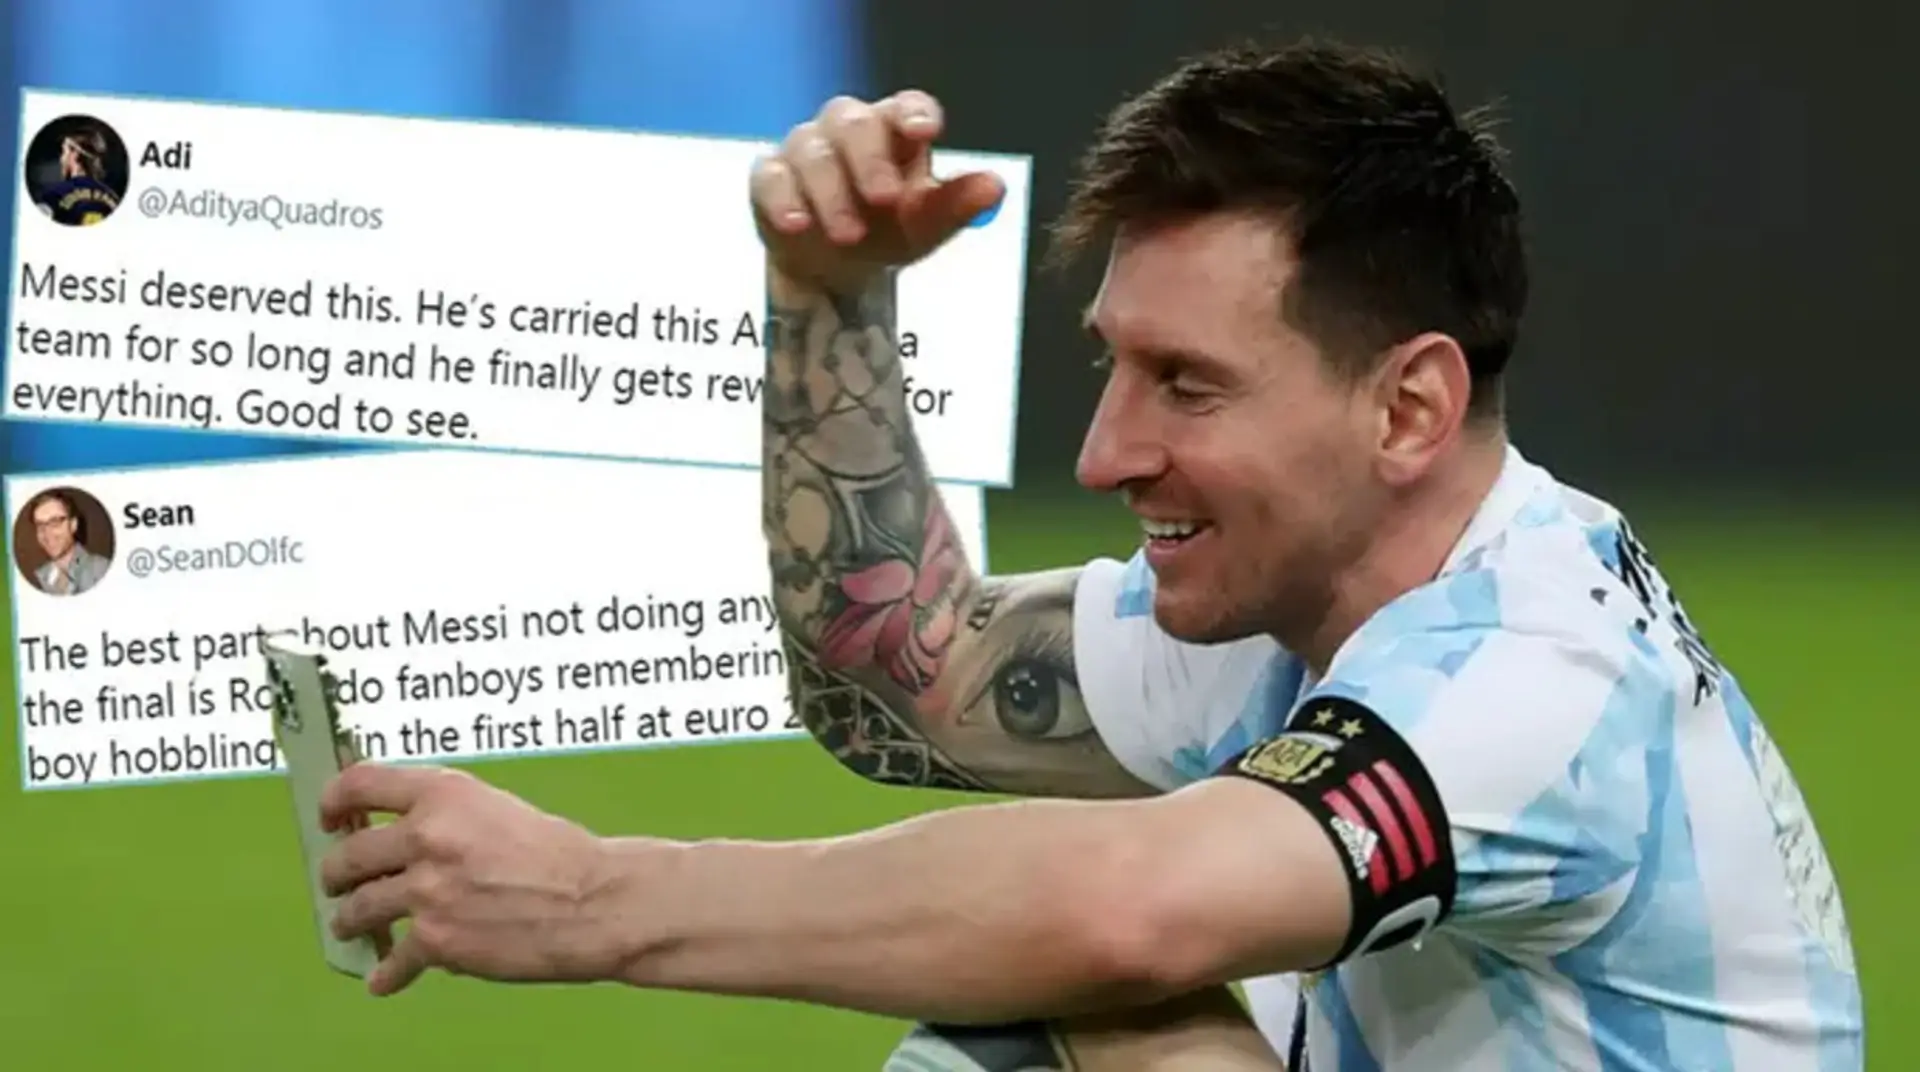 'Finalmente obtiene lo que se merece': los aficionados rivales reaccionan al triunfo de Messi en la Copa América